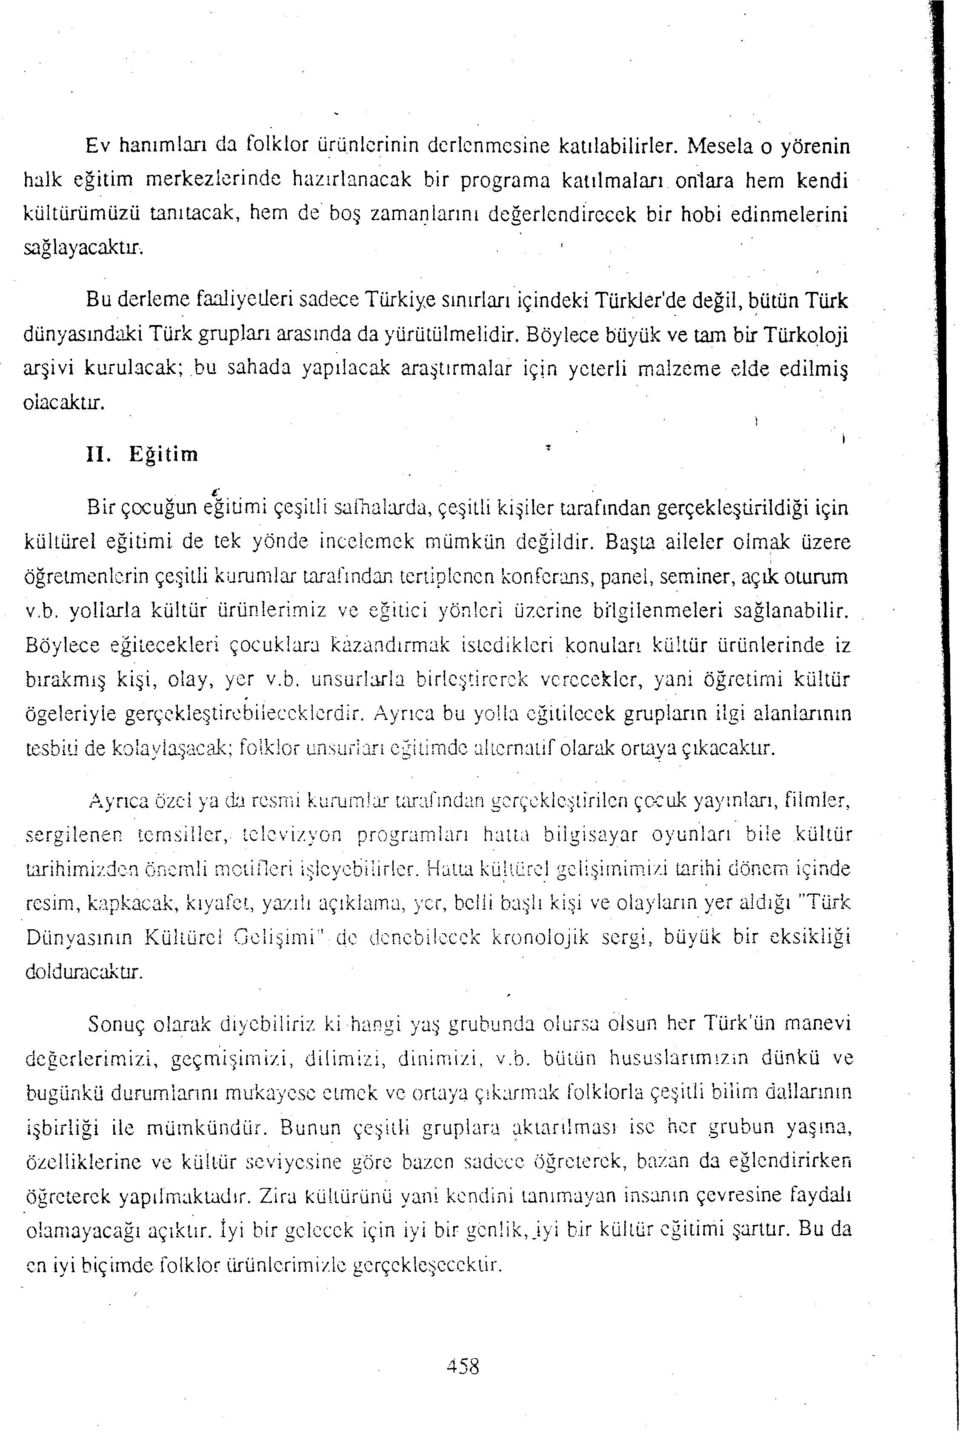 Bu derleme faaliyetleri sadece Türkiye sınırları içindeki Türkler'de değil, bütün Türk dünyasındaki Türk grupları arasında da yürütülmelidir. Böylece büyük ve tam bir Türkoloji arşivi kurulacak.